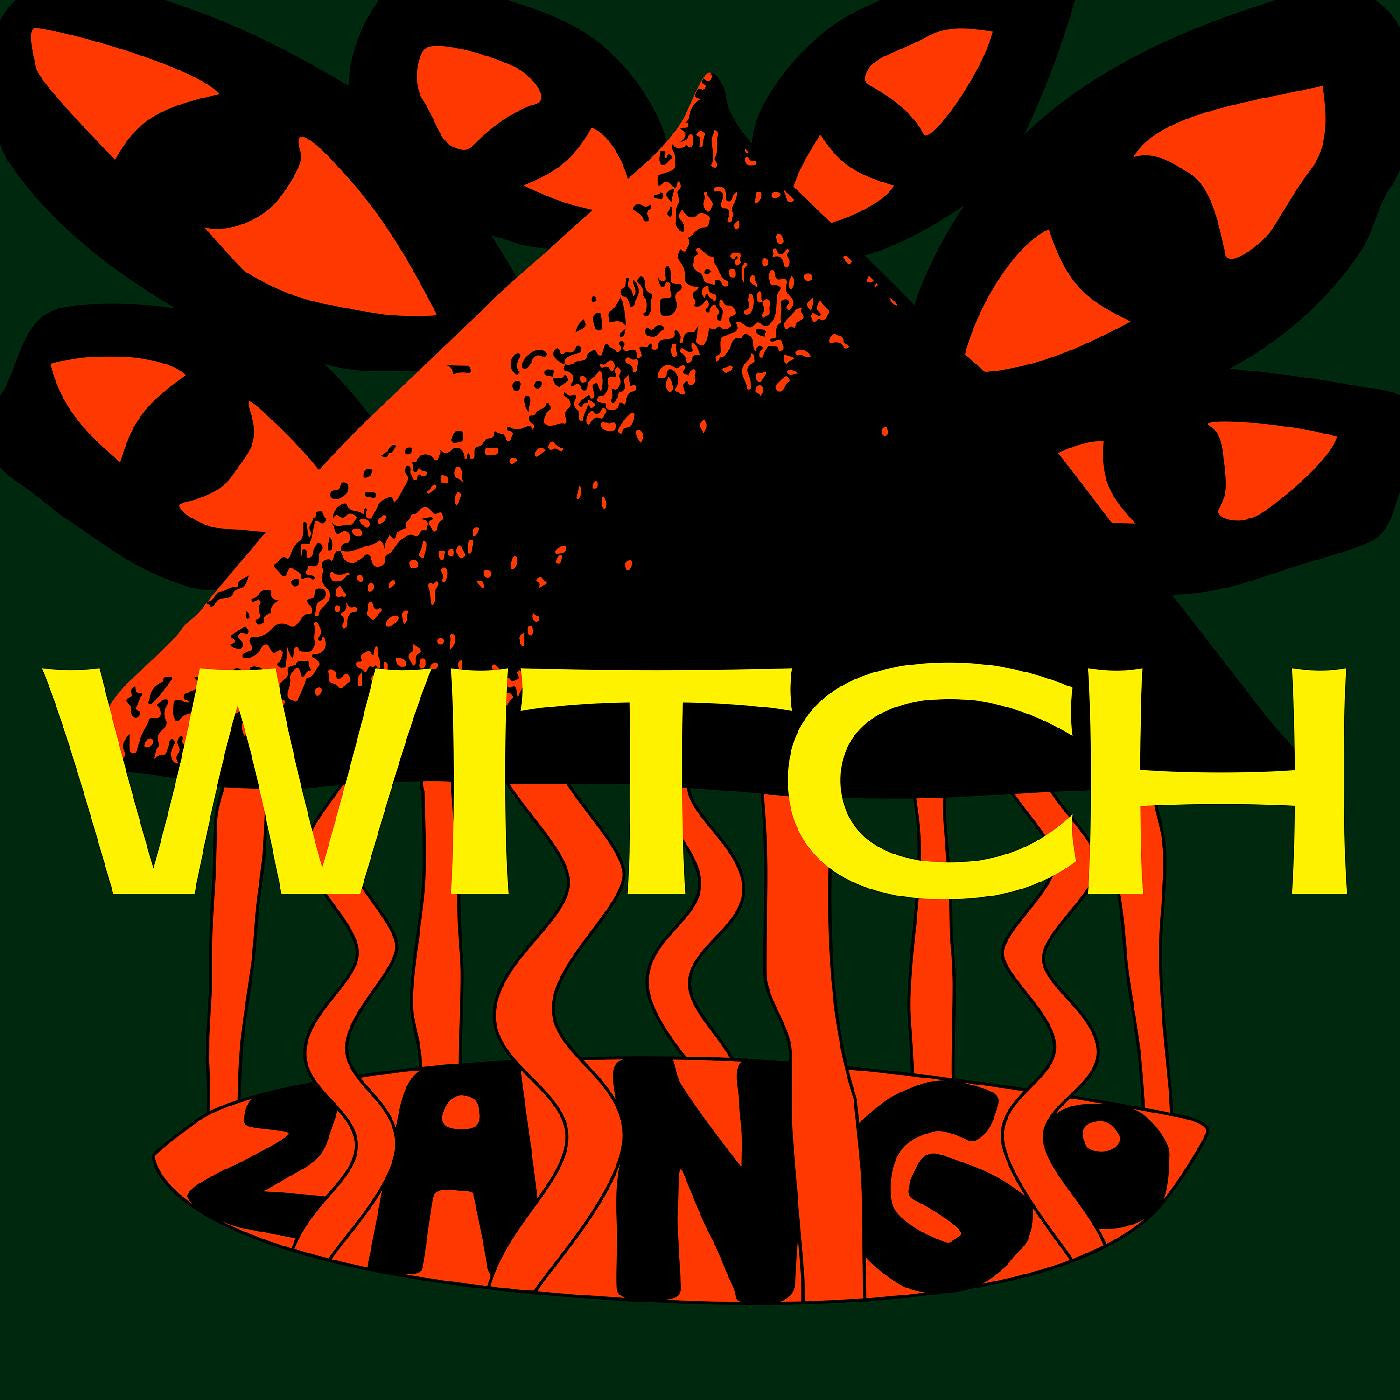 Witch - Zango - LP